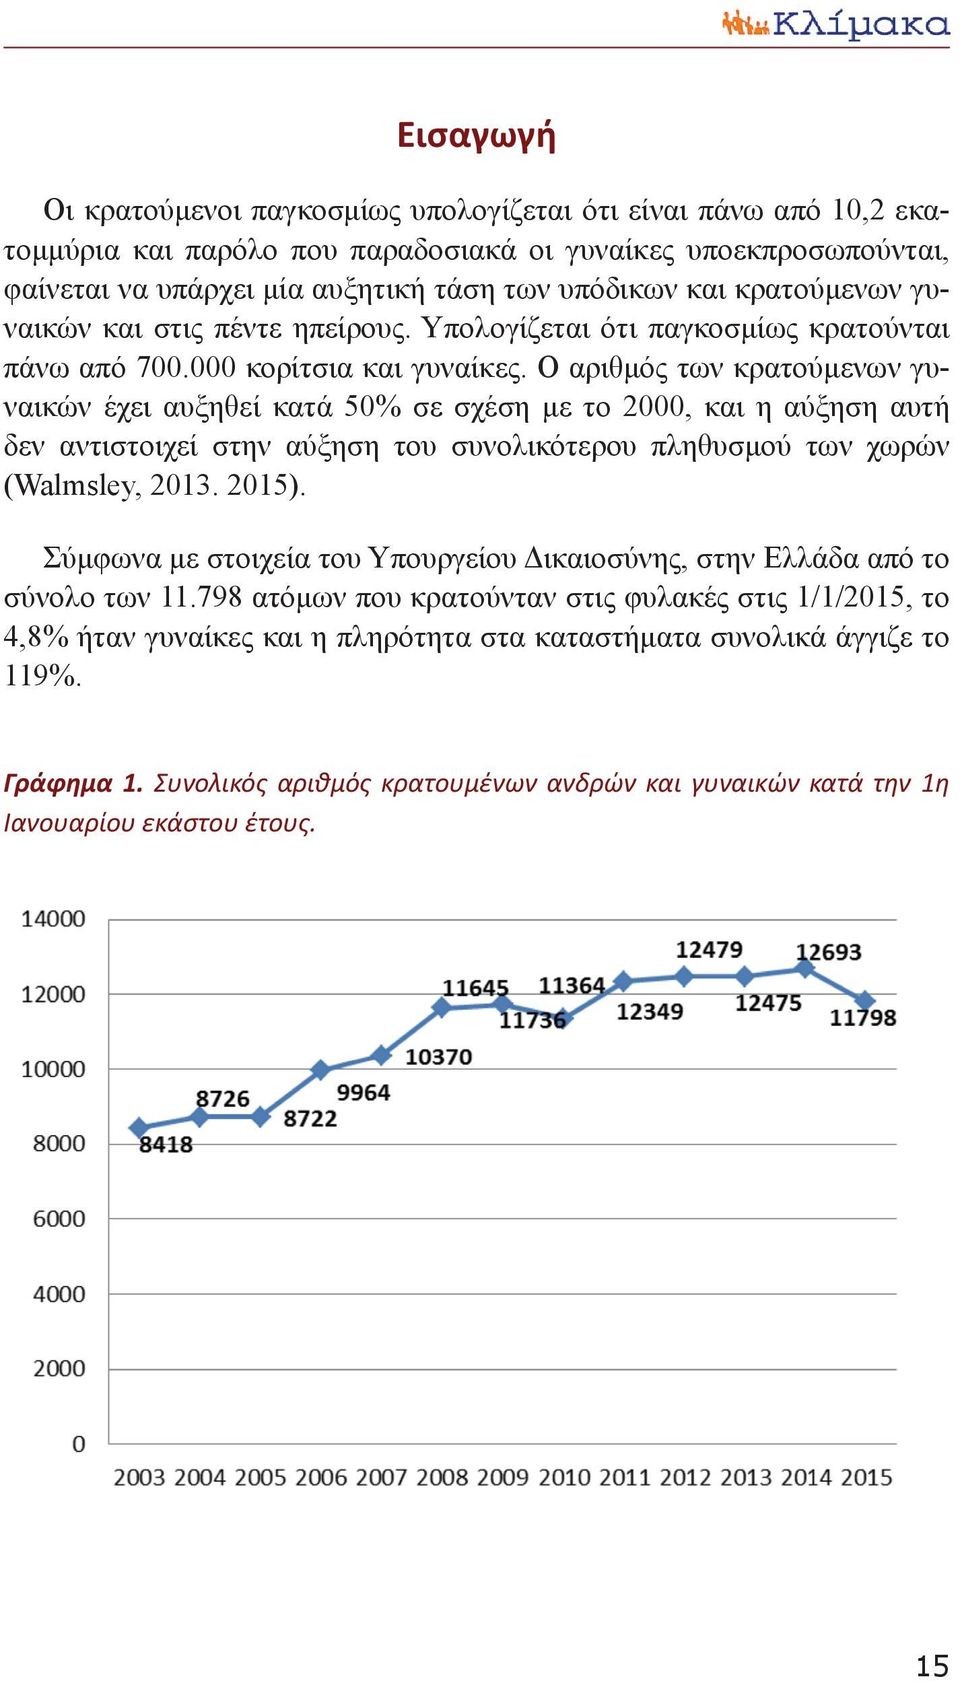 Ο αριθμός των κρατούμενων γυναικών έχει αυξηθεί κατά 50% σε σχέση με το 2000, και η αύξηση αυτή δεν αντιστοιχεί στην αύξηση του συνολικότερου πληθυσμού των χωρών (Walmsley, 2013. 2015).